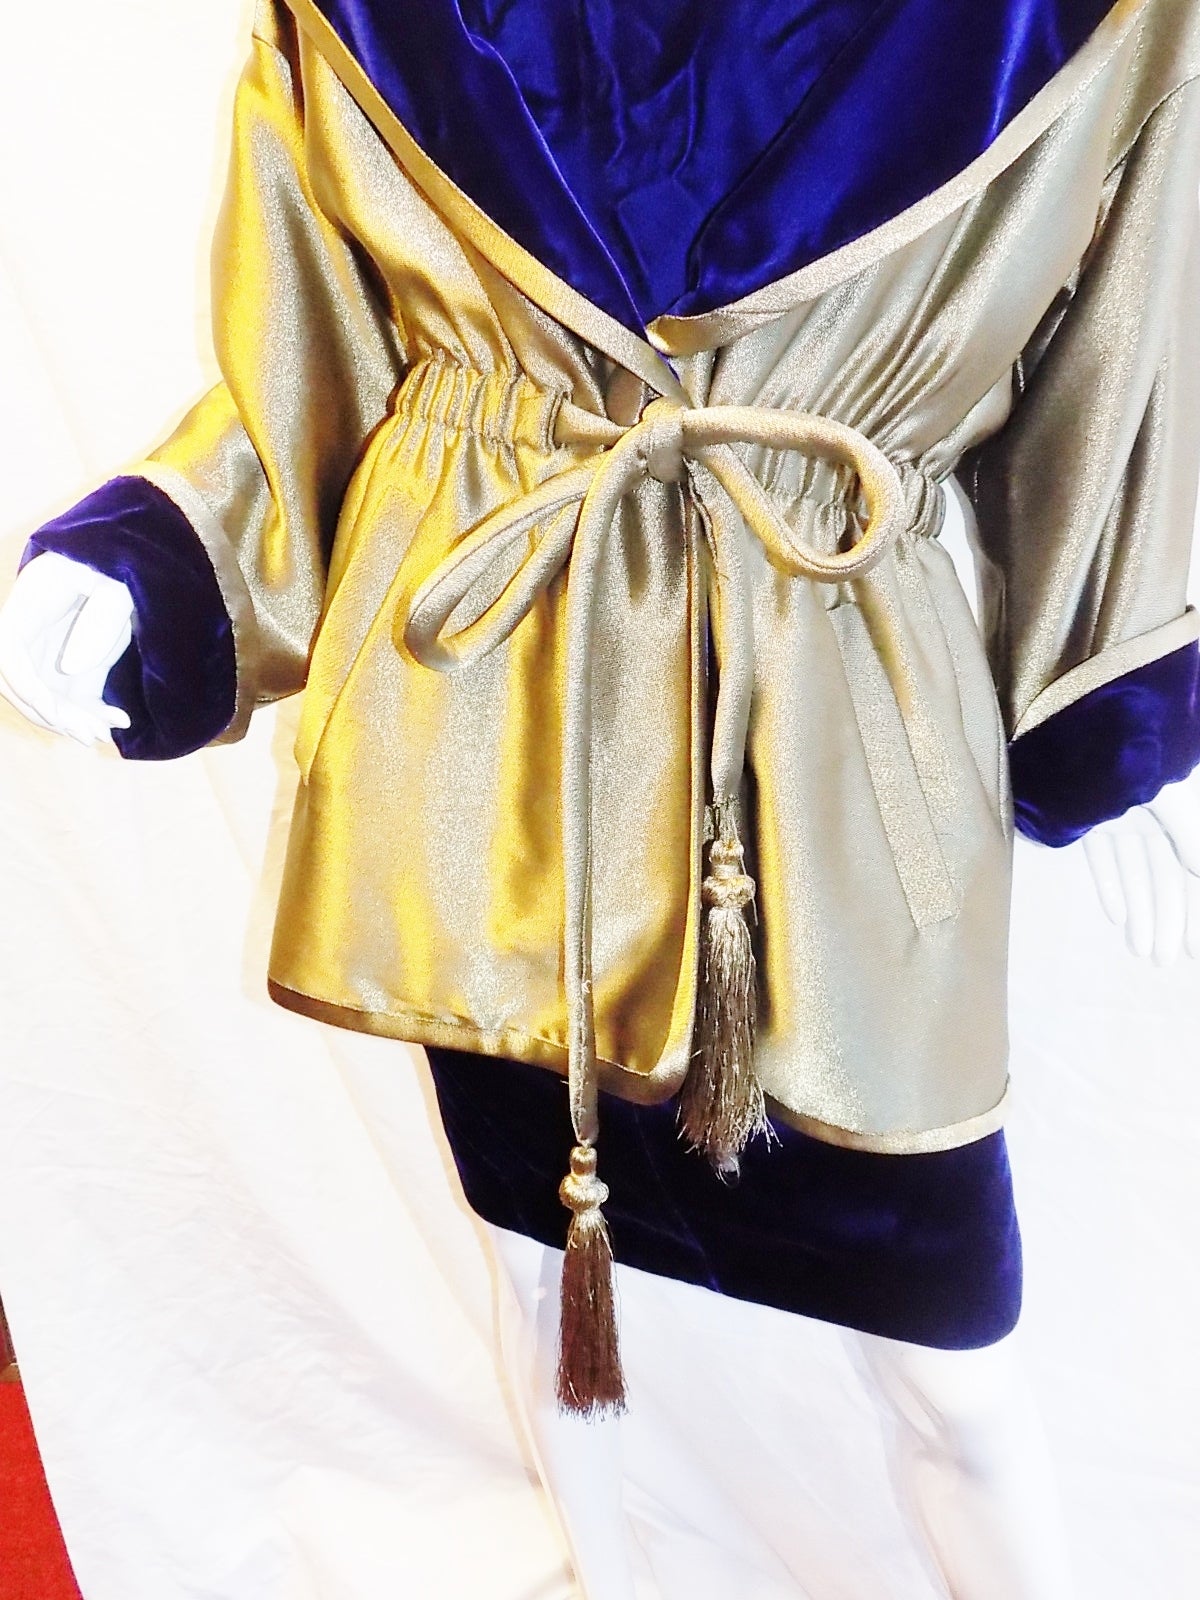 Anne Klein late 70's Royal Purple Dress and Metallic Gold Jacket Ensemble 1